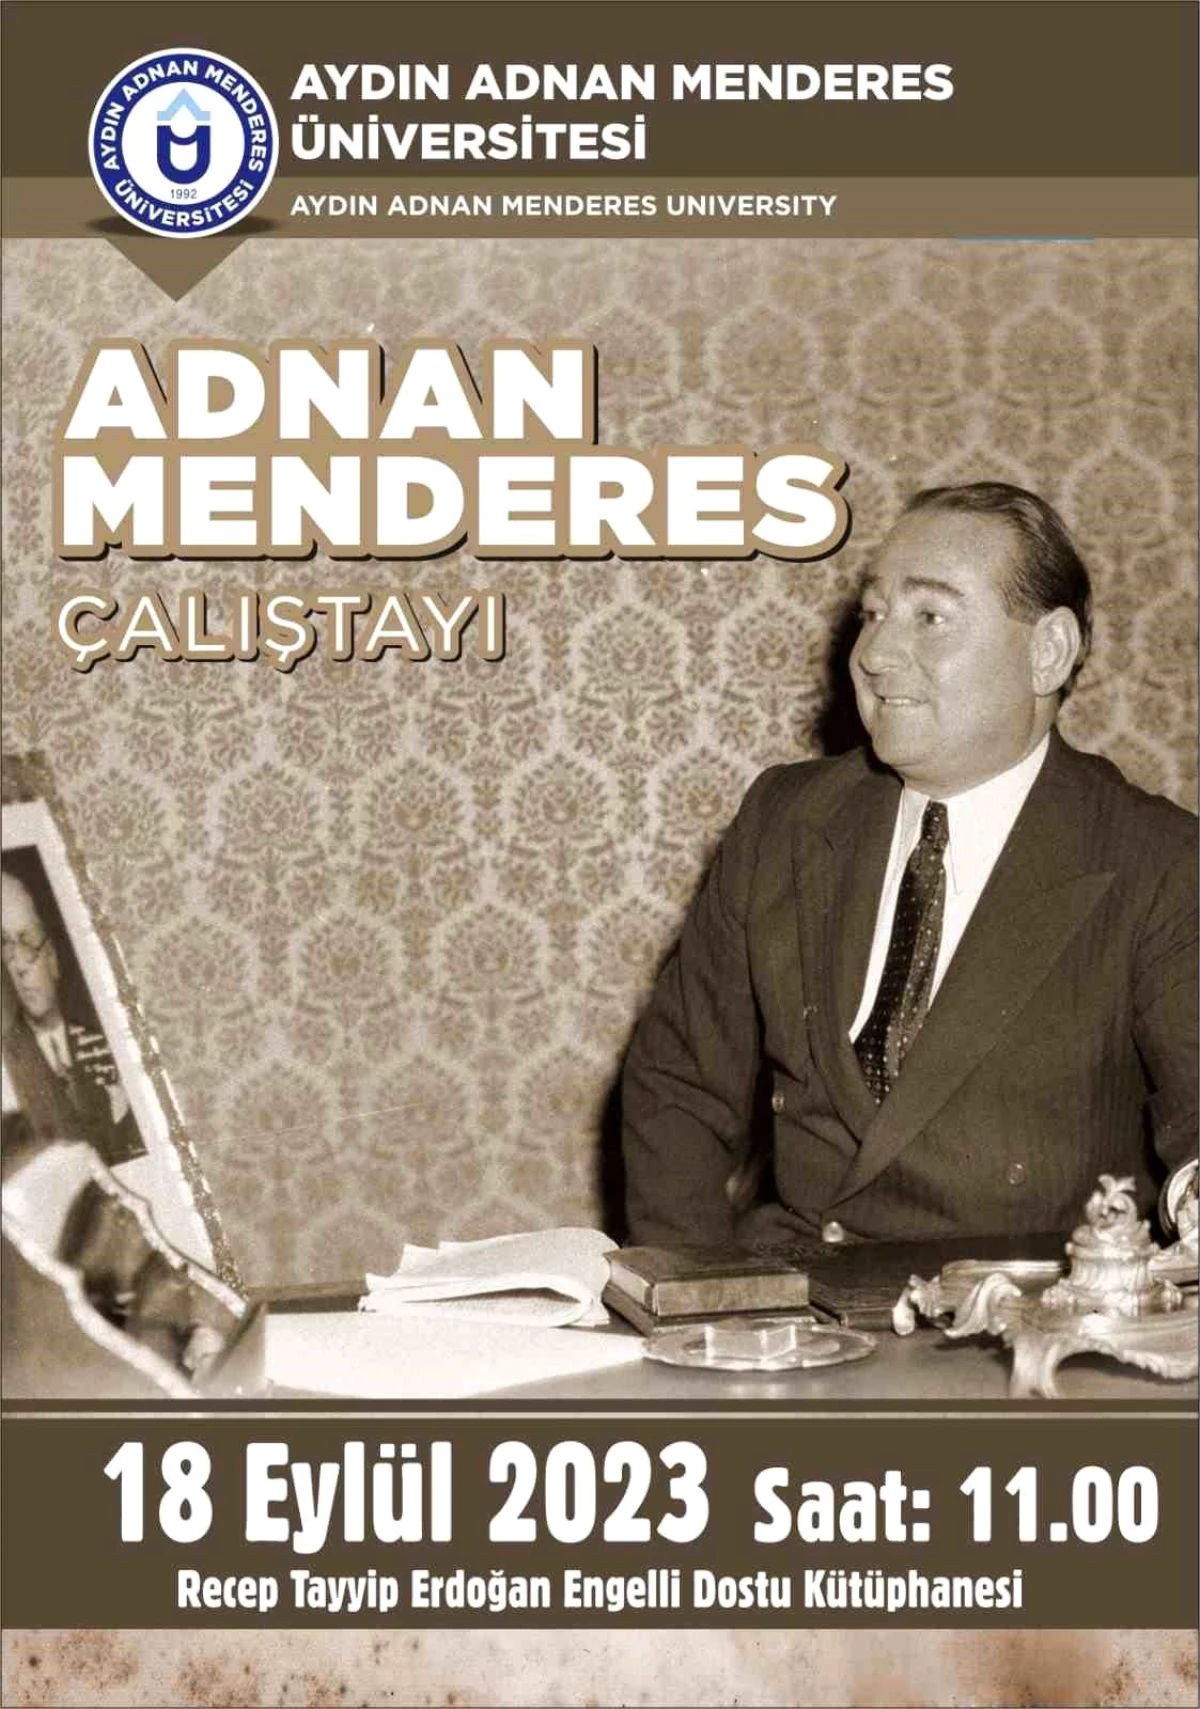 Adnan Menderes ve arkadaşlarının idam edilişinin 62. yılında çalıştay düzenlenecek